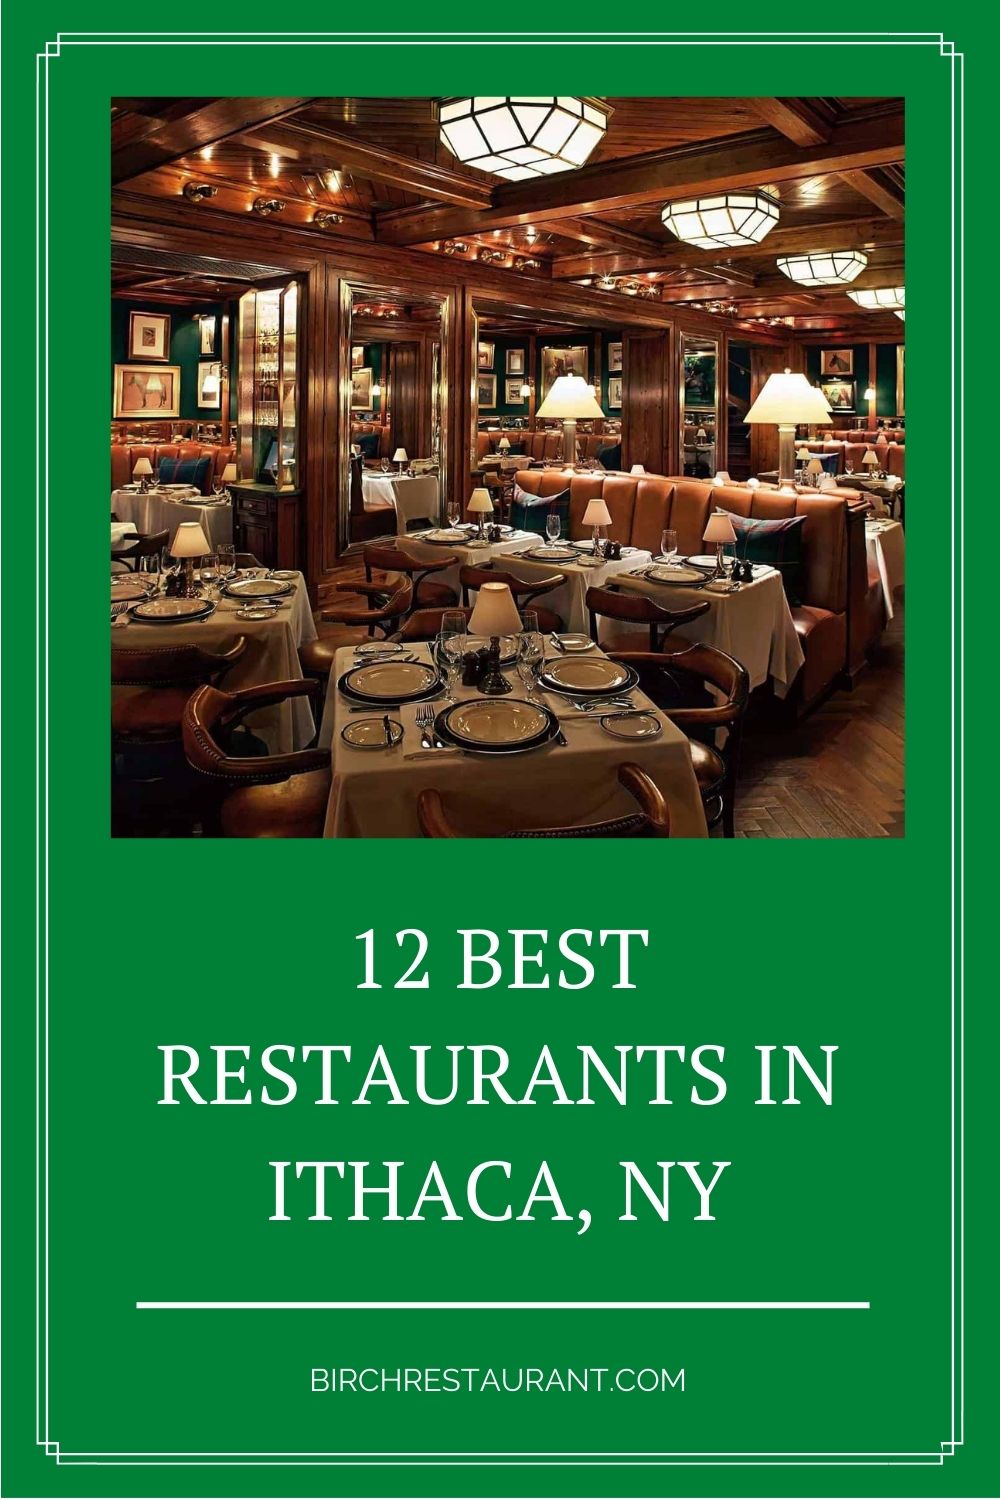 Best Restaurants in Ithaca